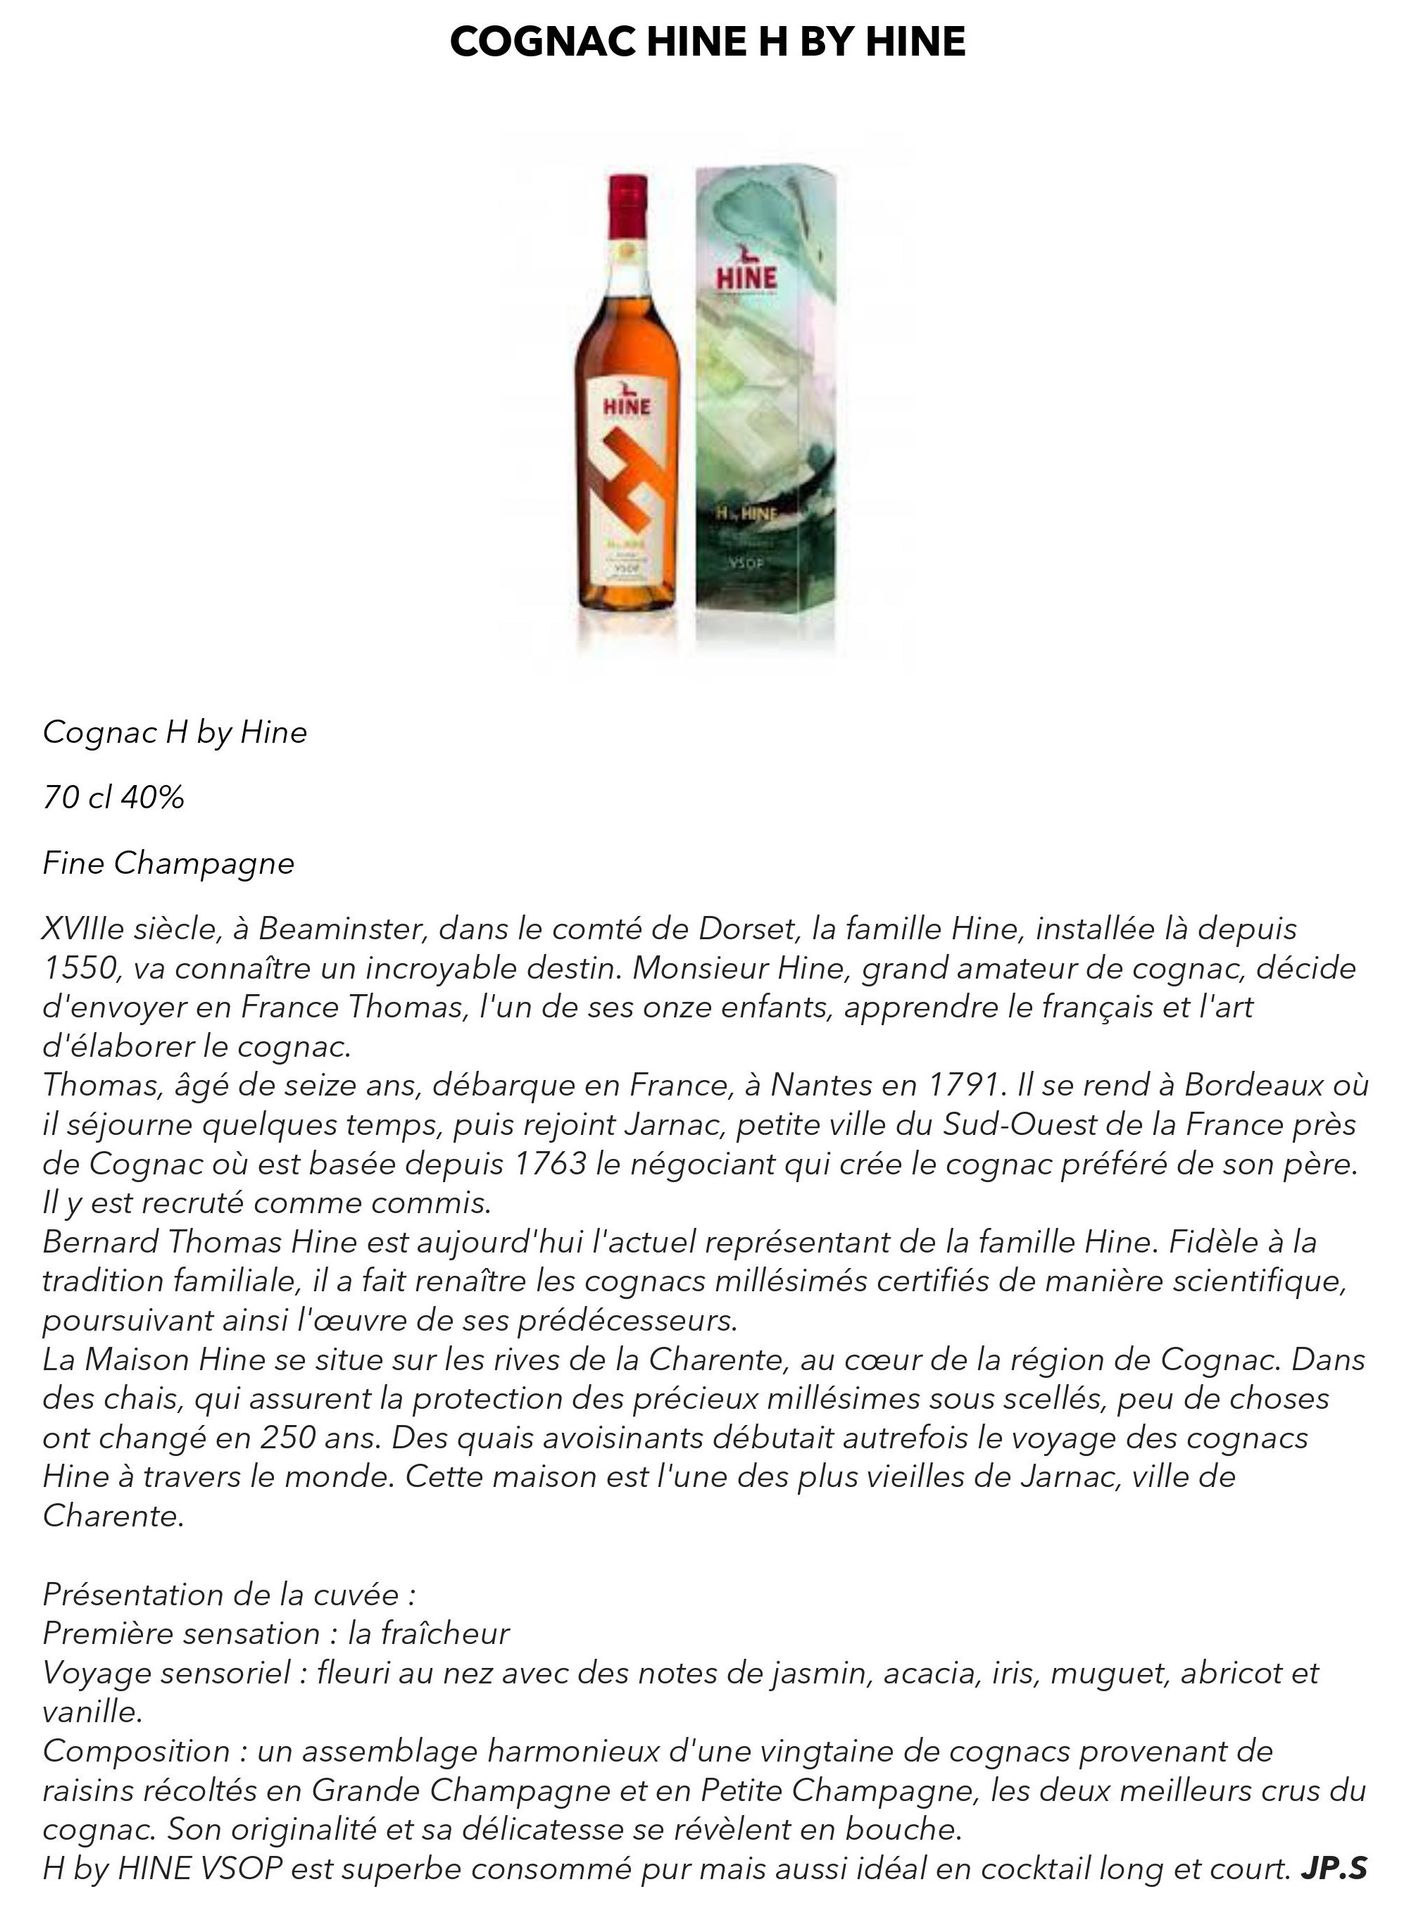 Cognac Hine H by Hine x 2 bouteilles mise à prix 110€